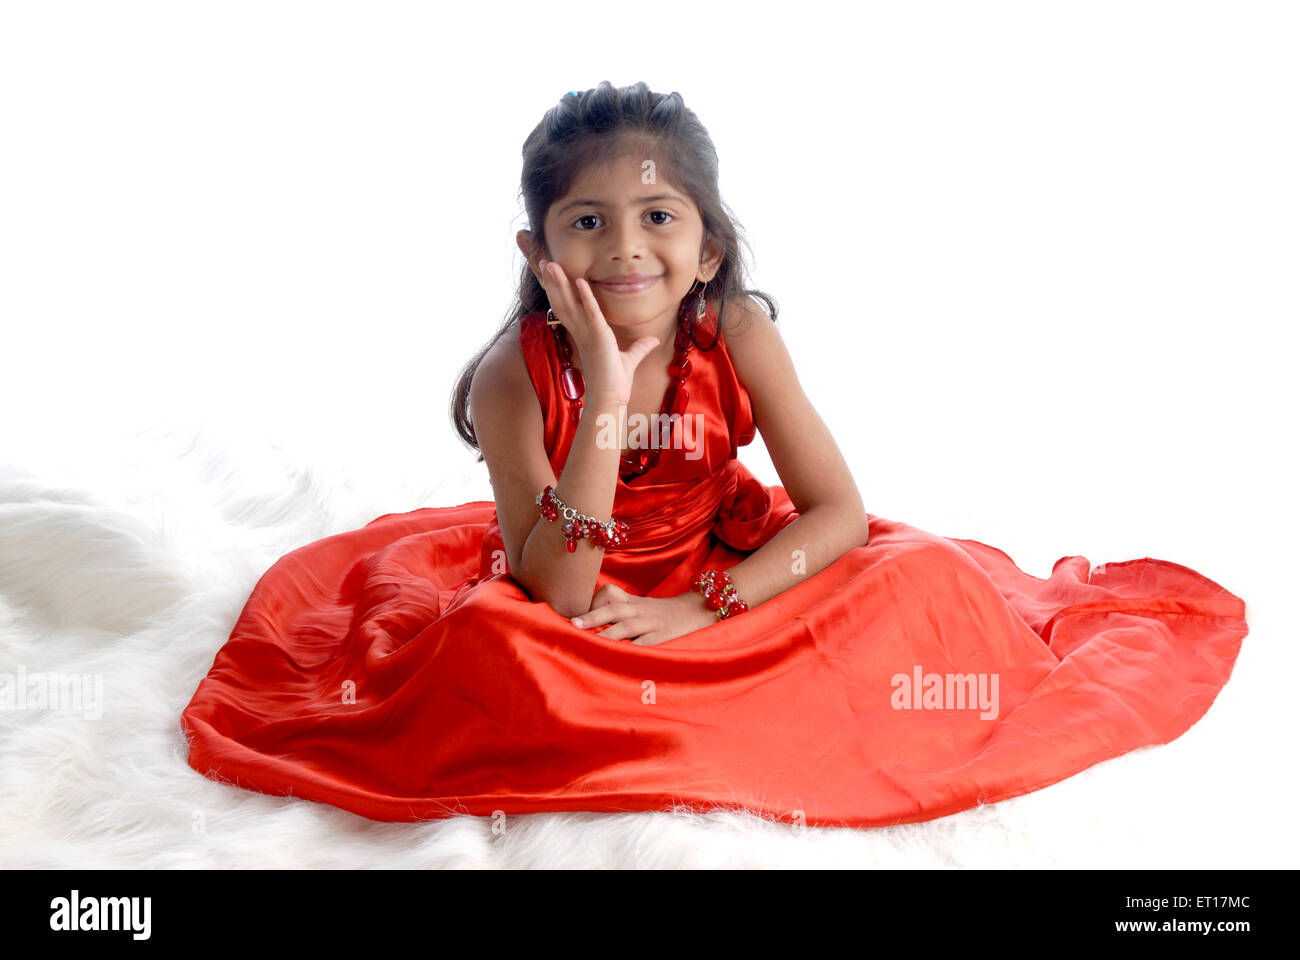 Indische Baby Mädchen Kind sitzen Hand auf das Gesicht rotes Kleid mit  weißem Hintergrund Herr #736 m-Rmm 151197 Stockfotografie - Alamy